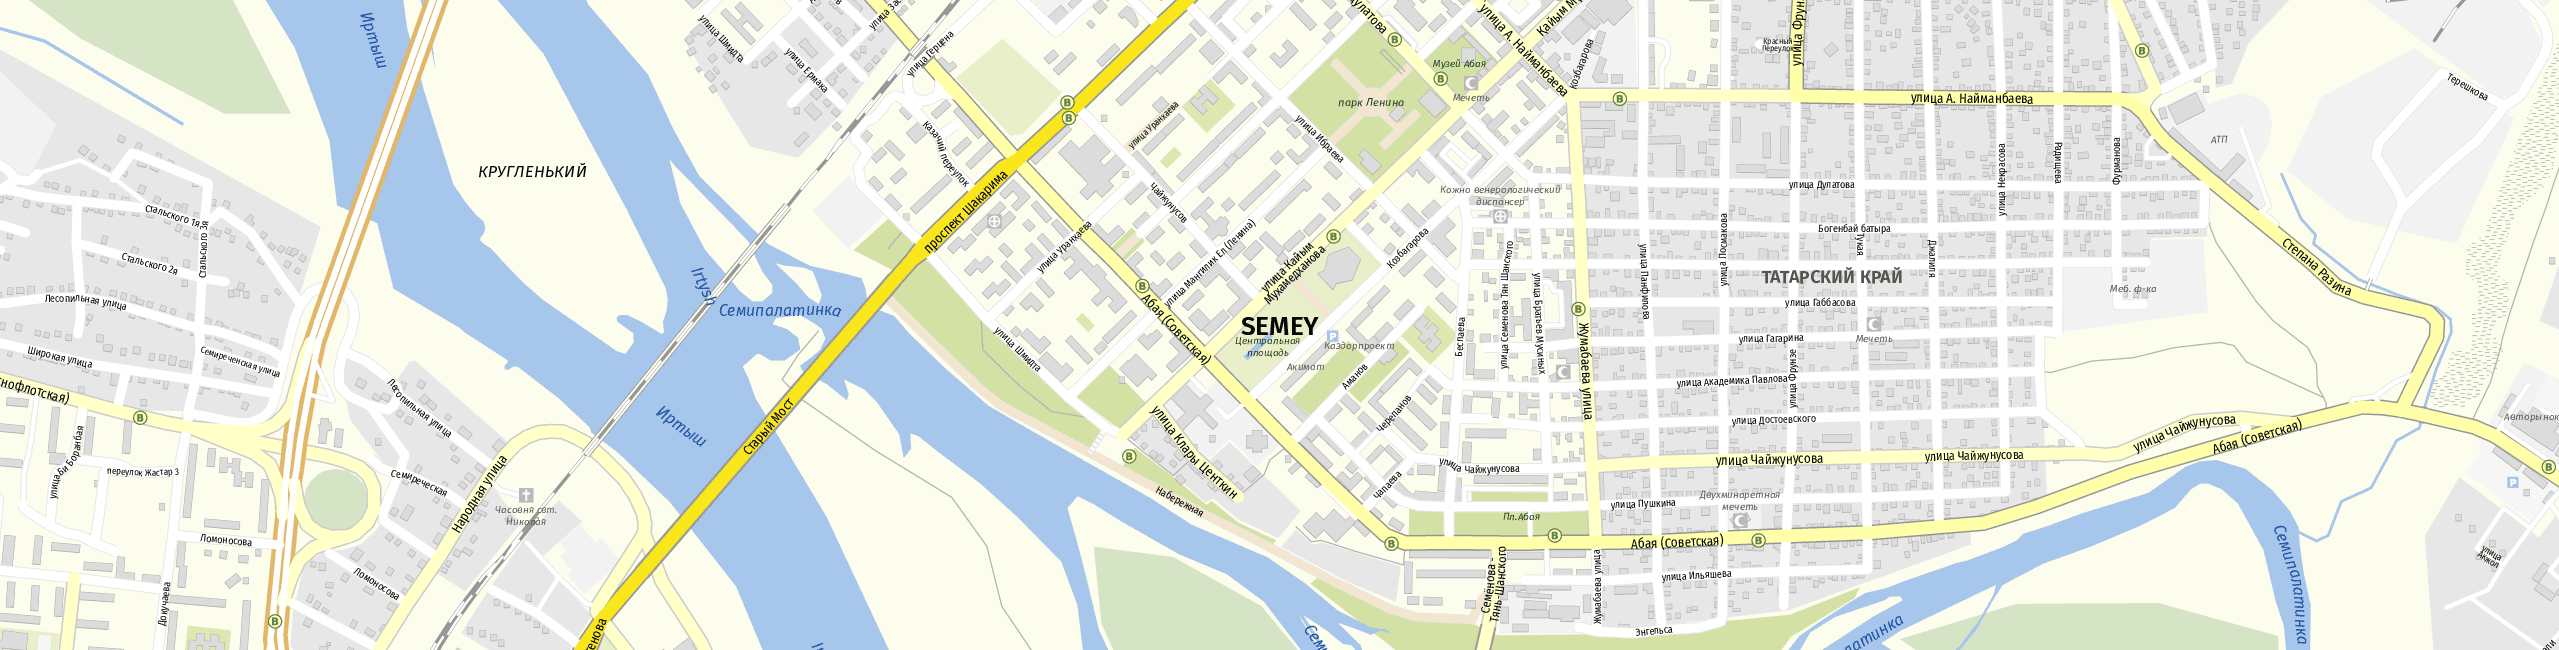 Stadtplan Semej zum Downloaden.